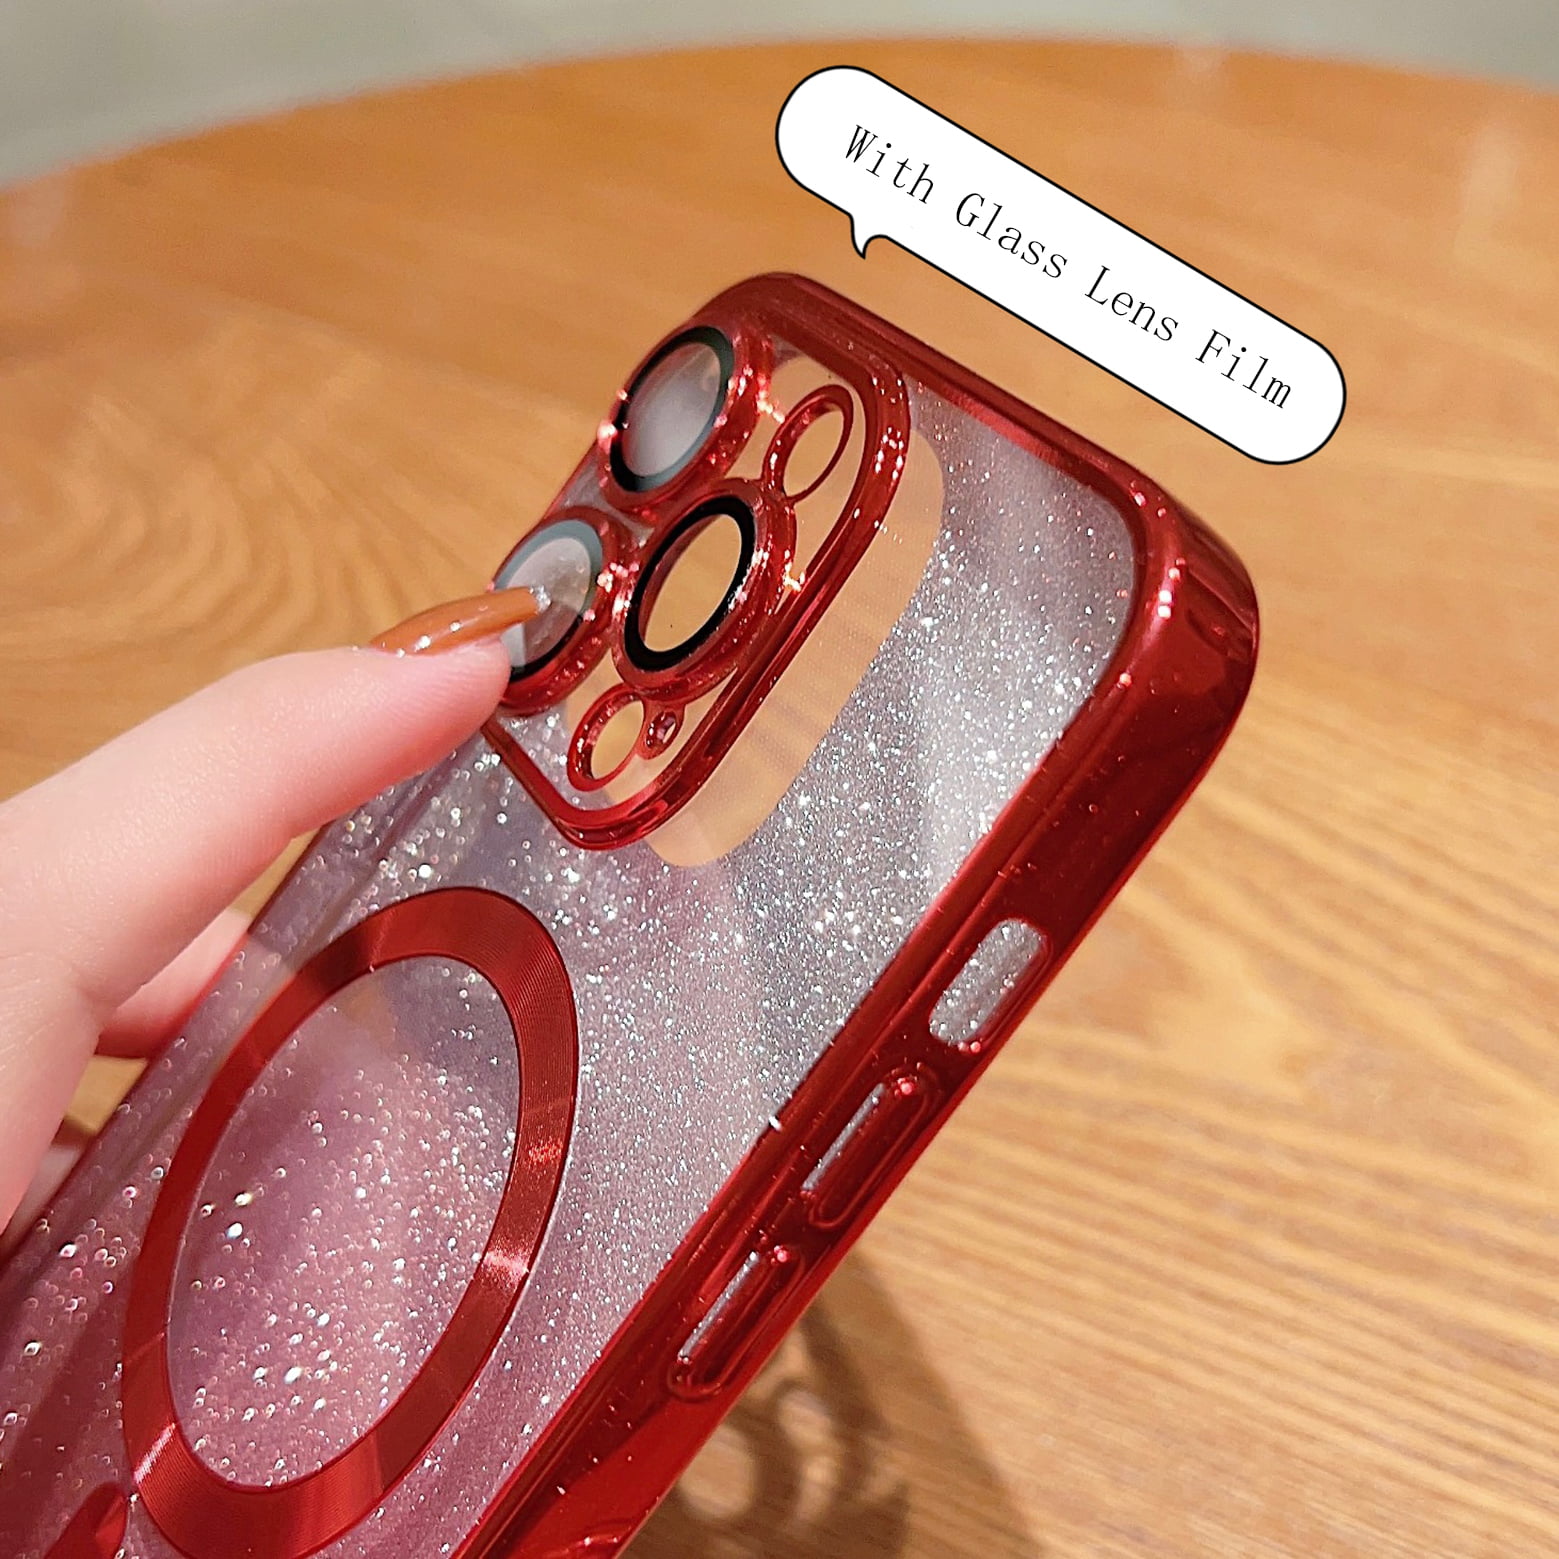 MW Verre Easy glass Case Friendly pour iPhone 14 Pro Max - Protection écran  - LDLC